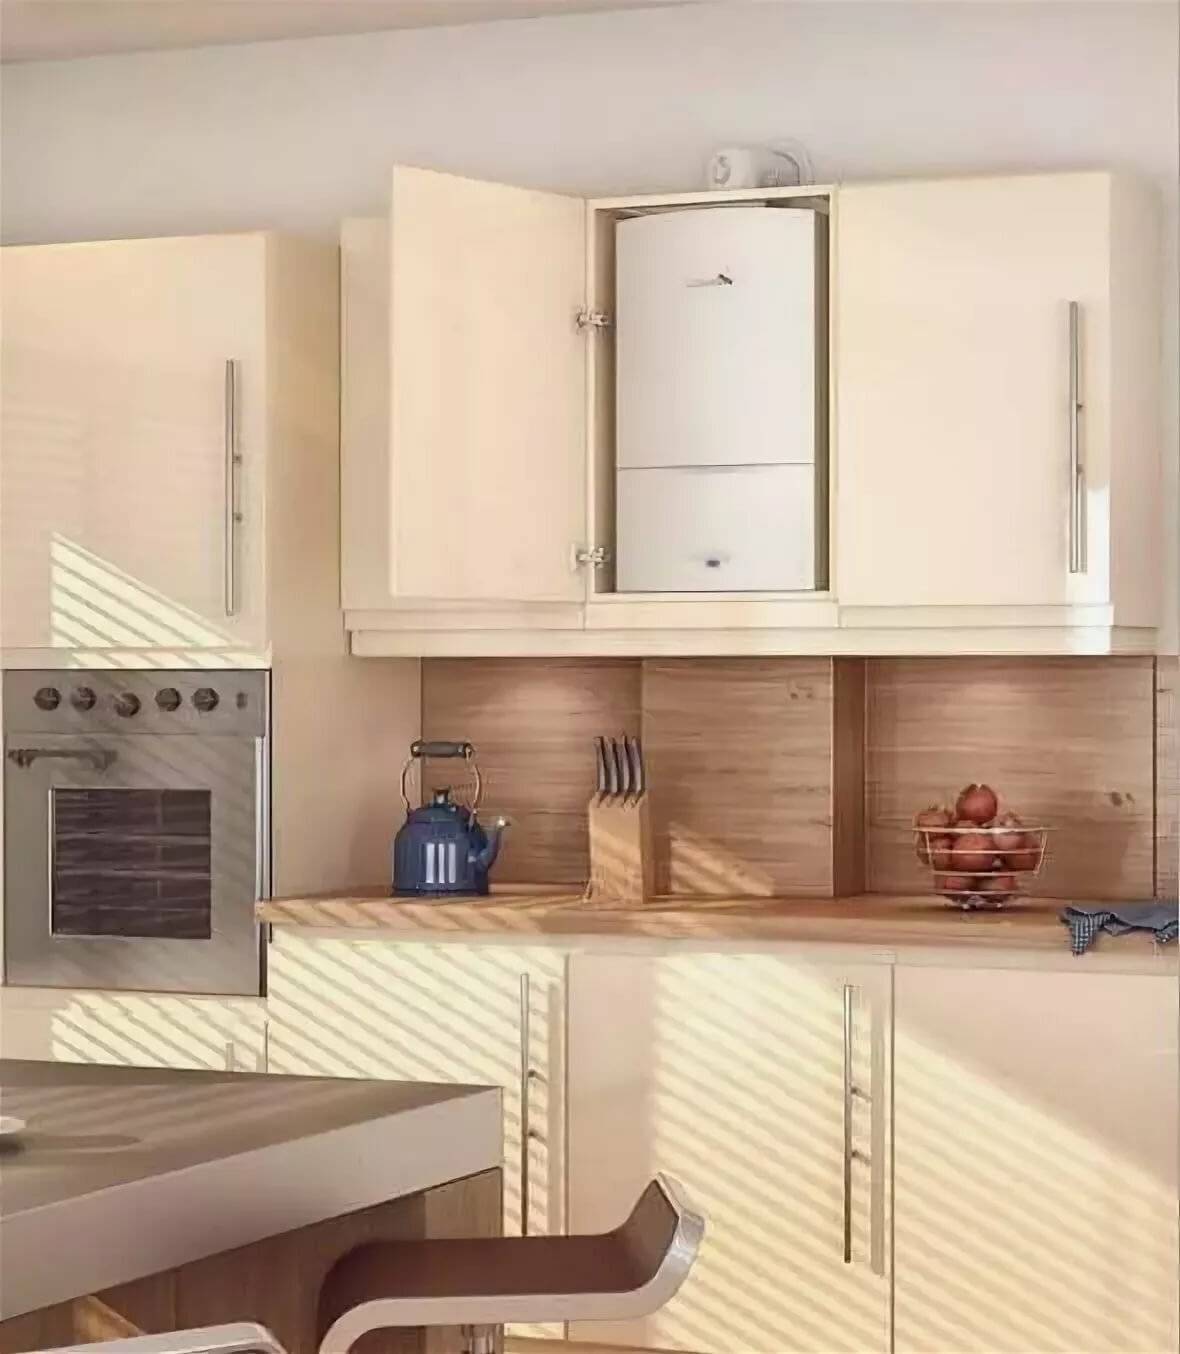 Дизайн кухни с газовым котлом на стене фото - портал о строительстве, ремонте и дизайне